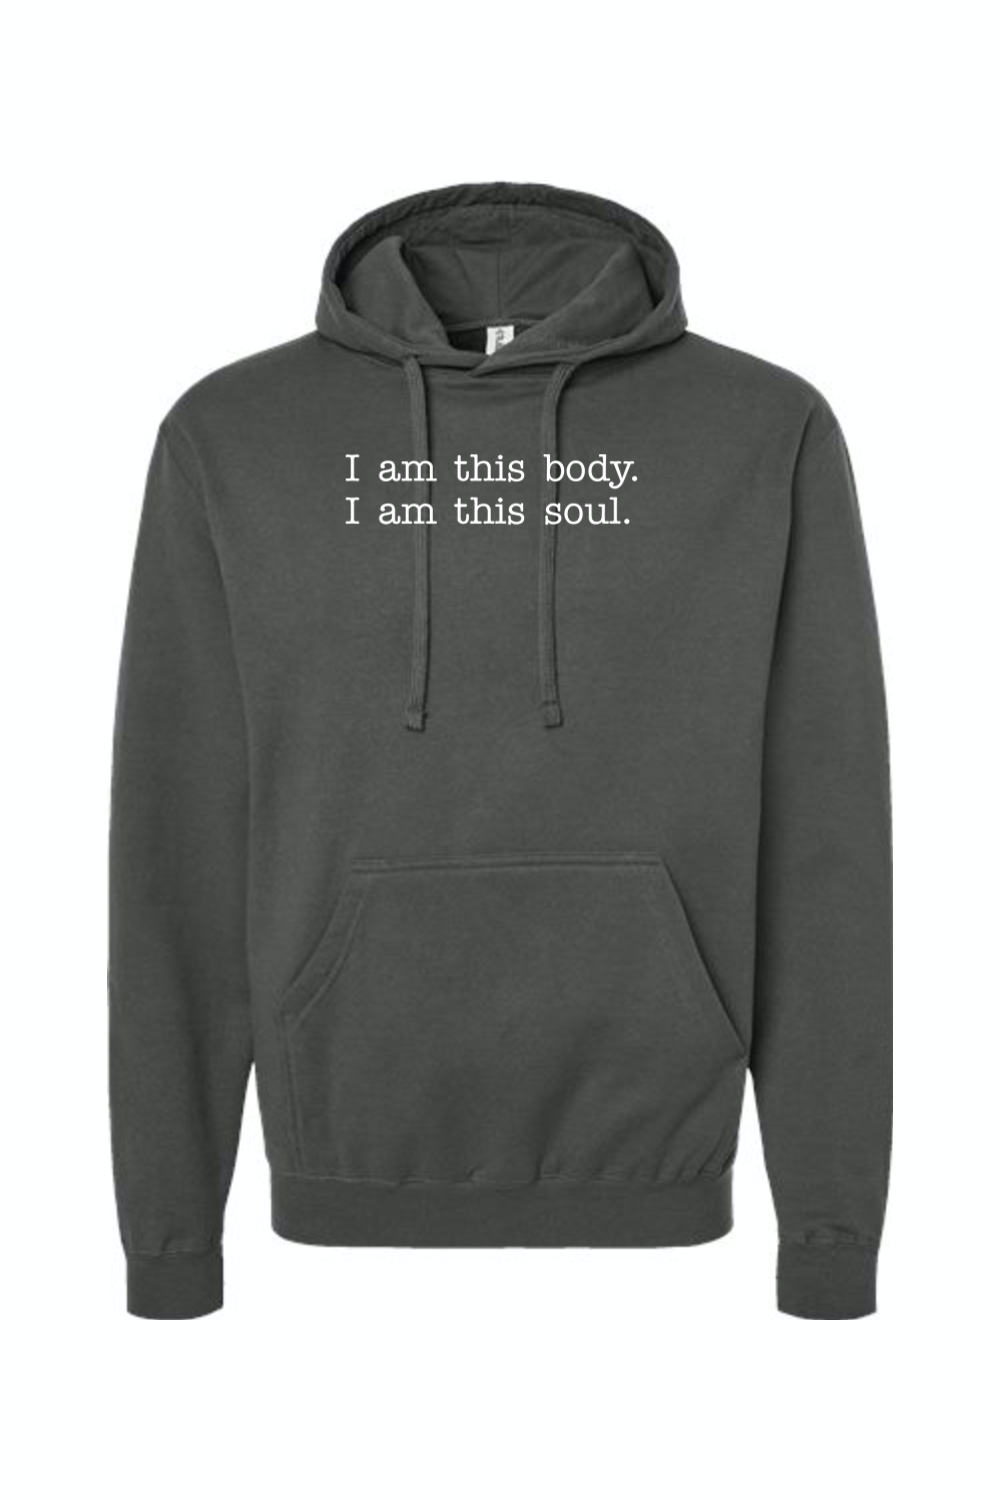 Body/Soul Composite - Human Integrity Hoodie Sweatshirt